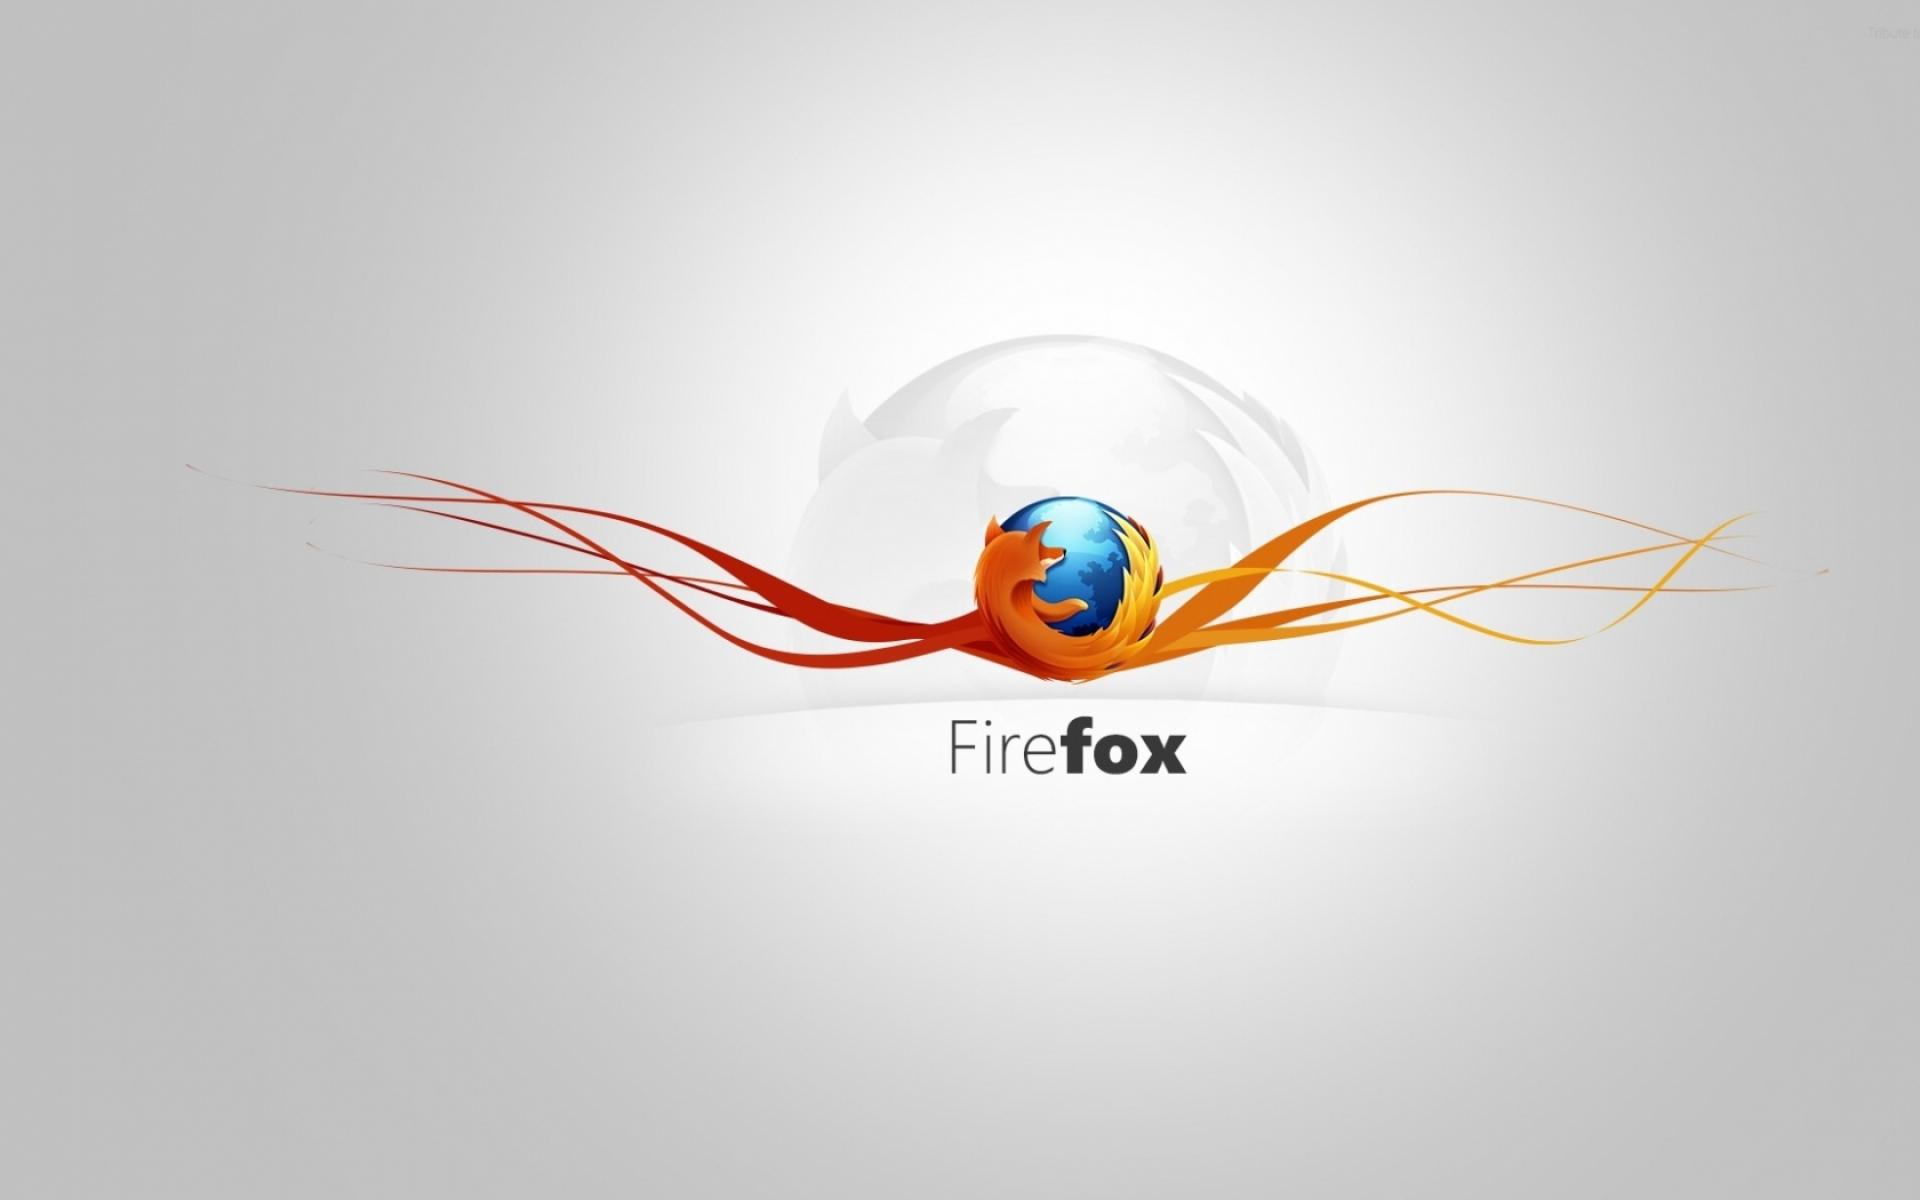 Firefox 19354 1920x1200 px